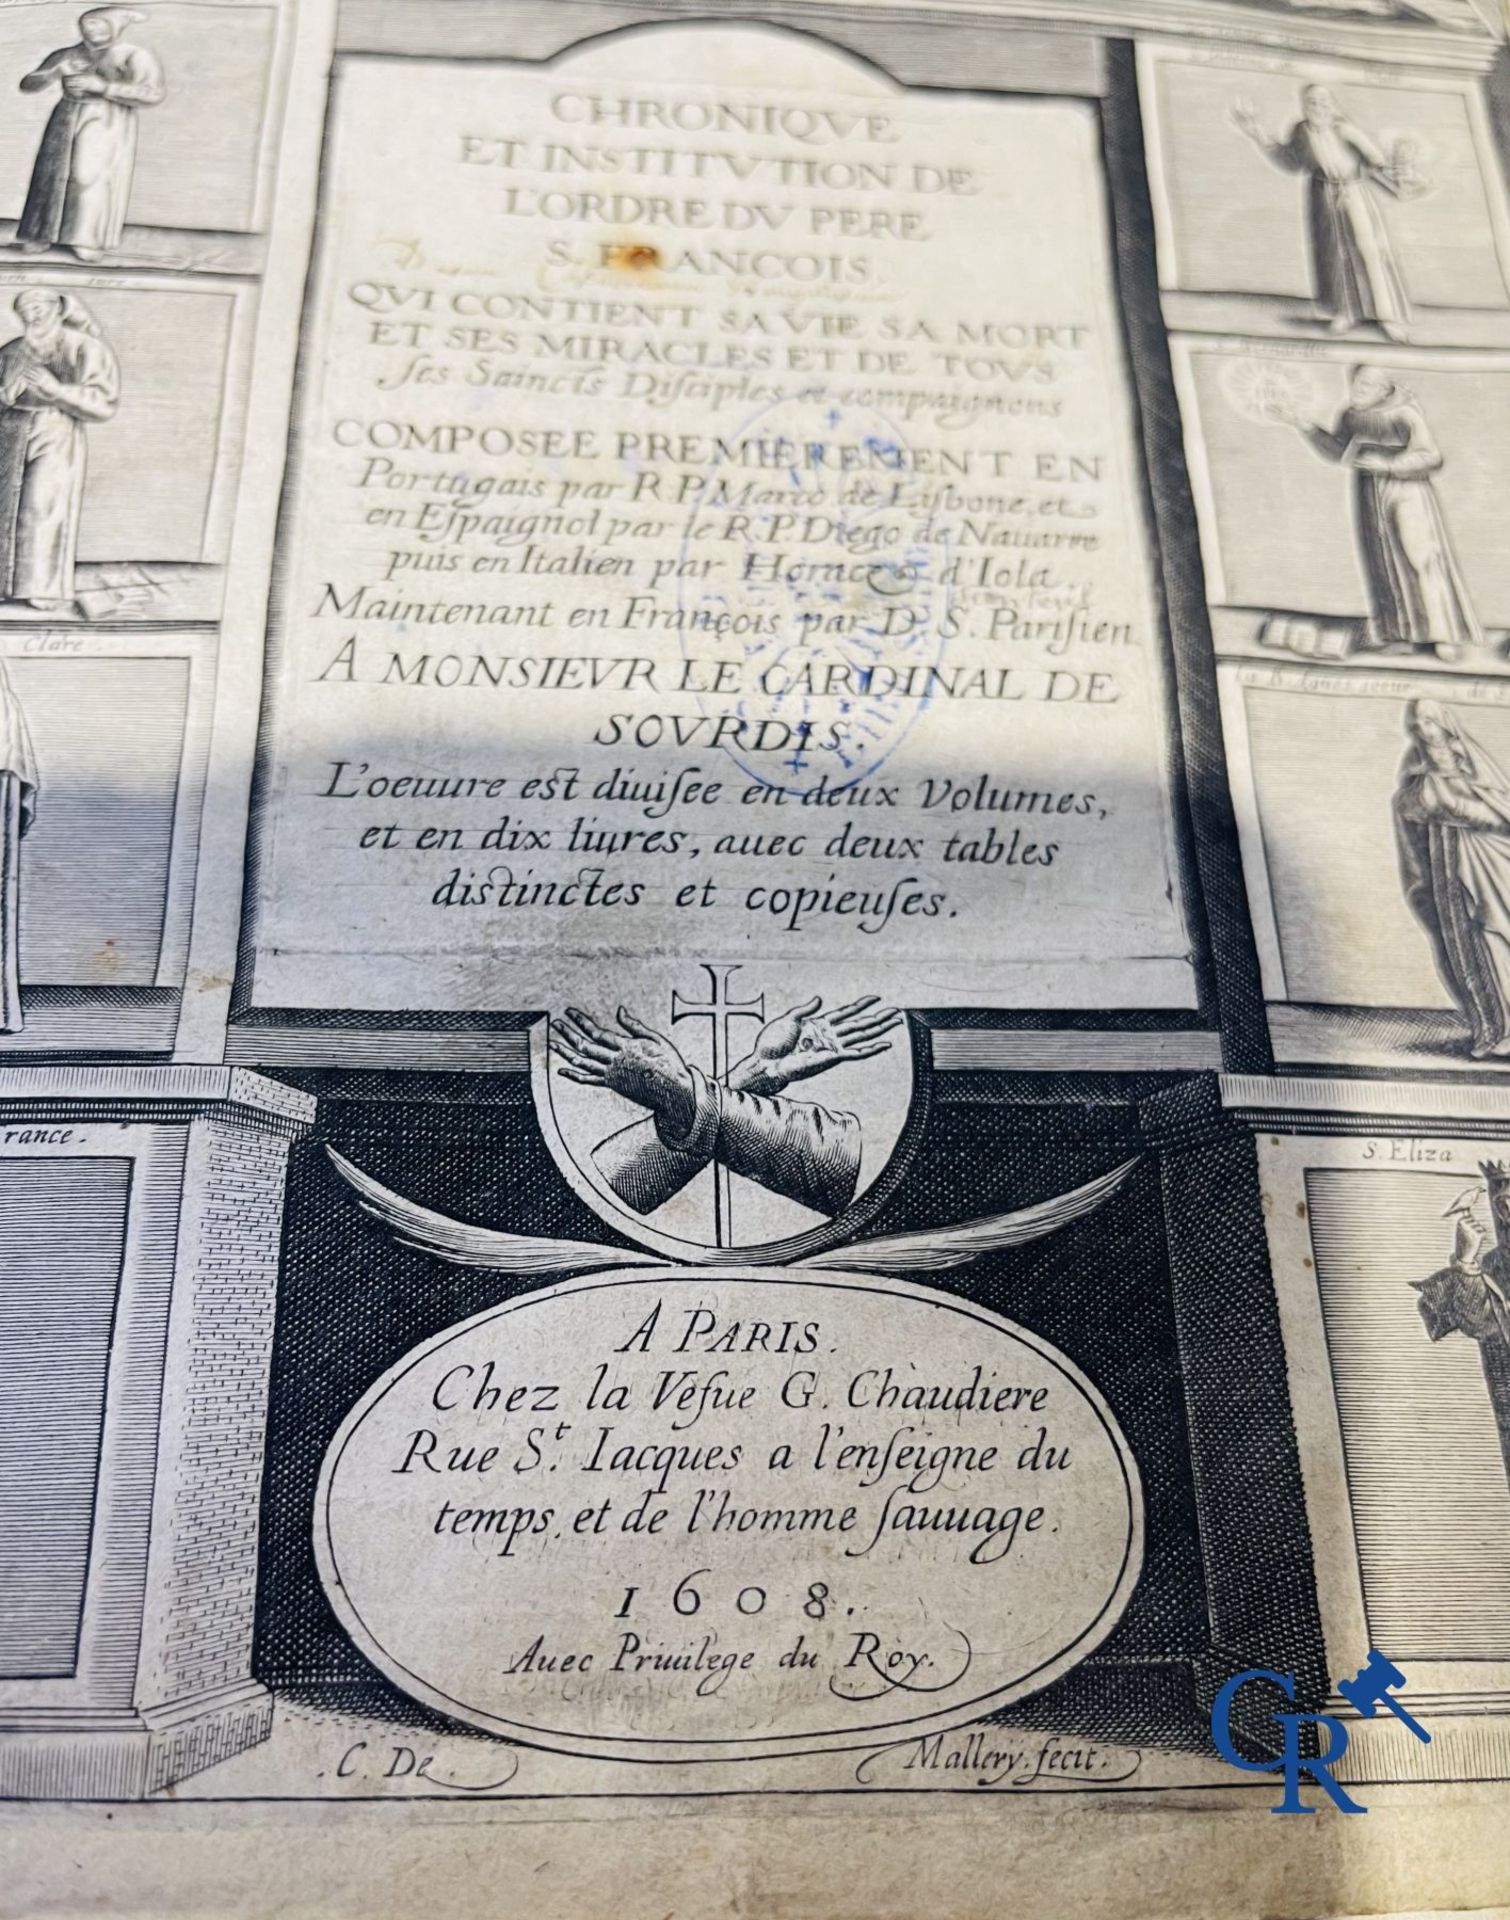 Early Printed Books: Marcos de Lisboa, Chronique et institution de l'ordre du Père S. François, Pari - Image 6 of 19